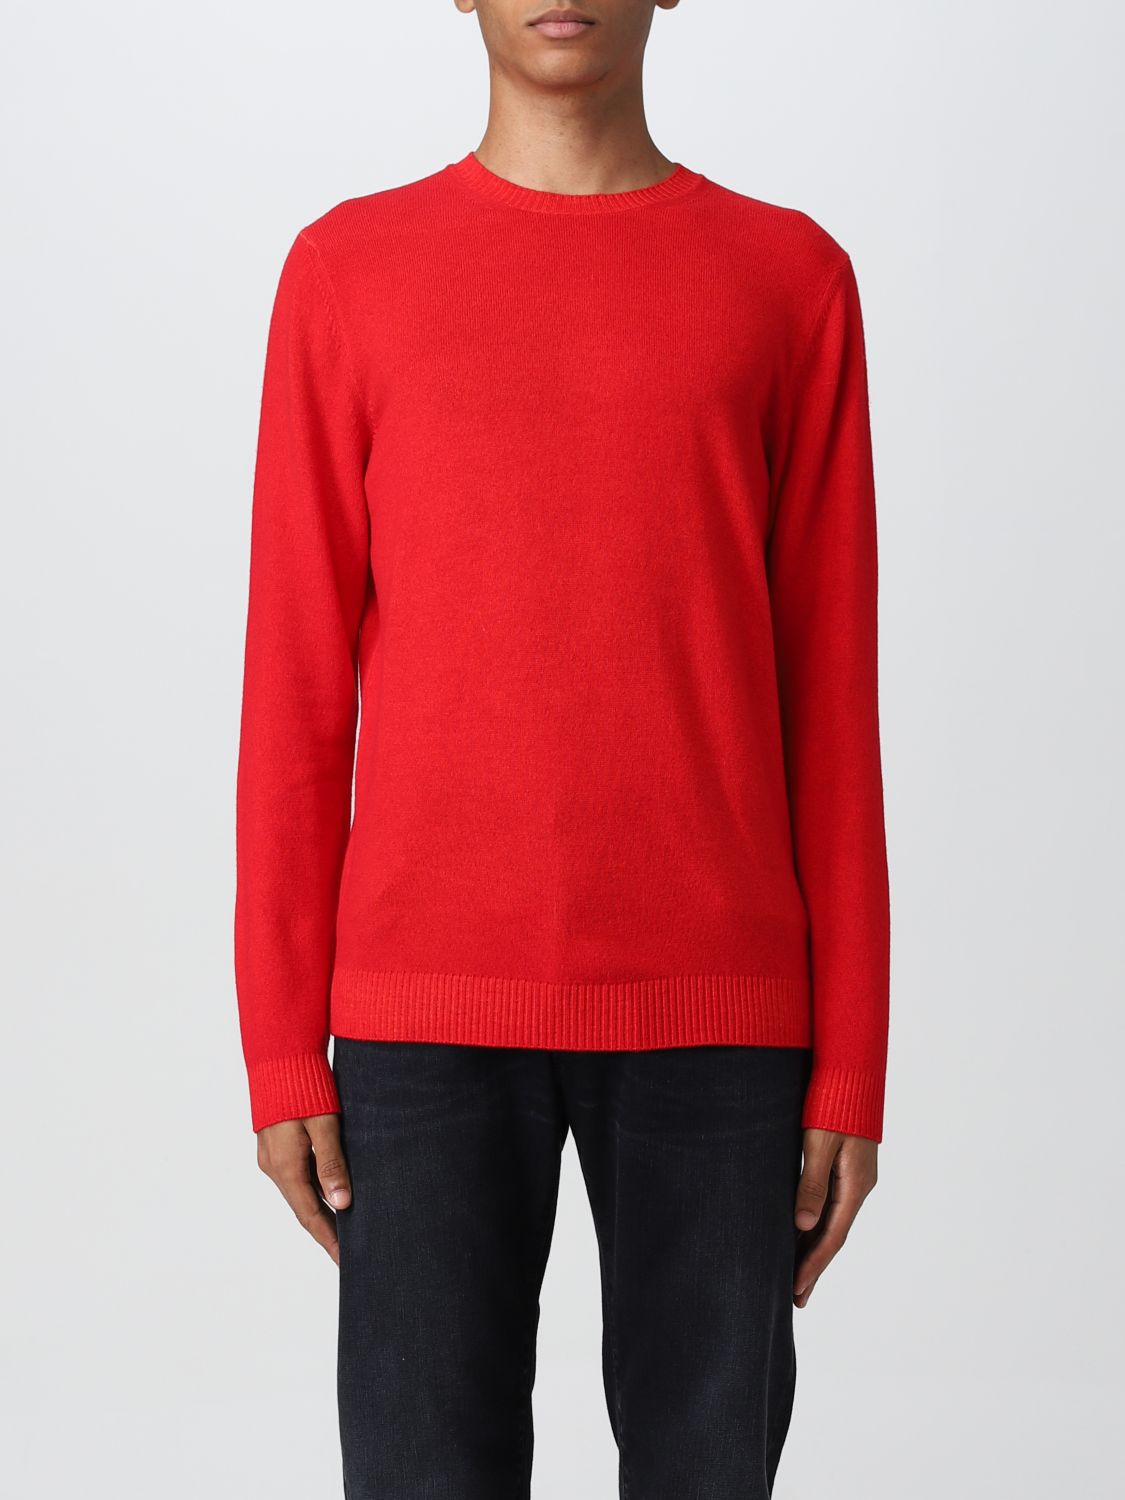 MALO: knitwear for man - Red | Malo knitwear UXA140F2K11 online on ...